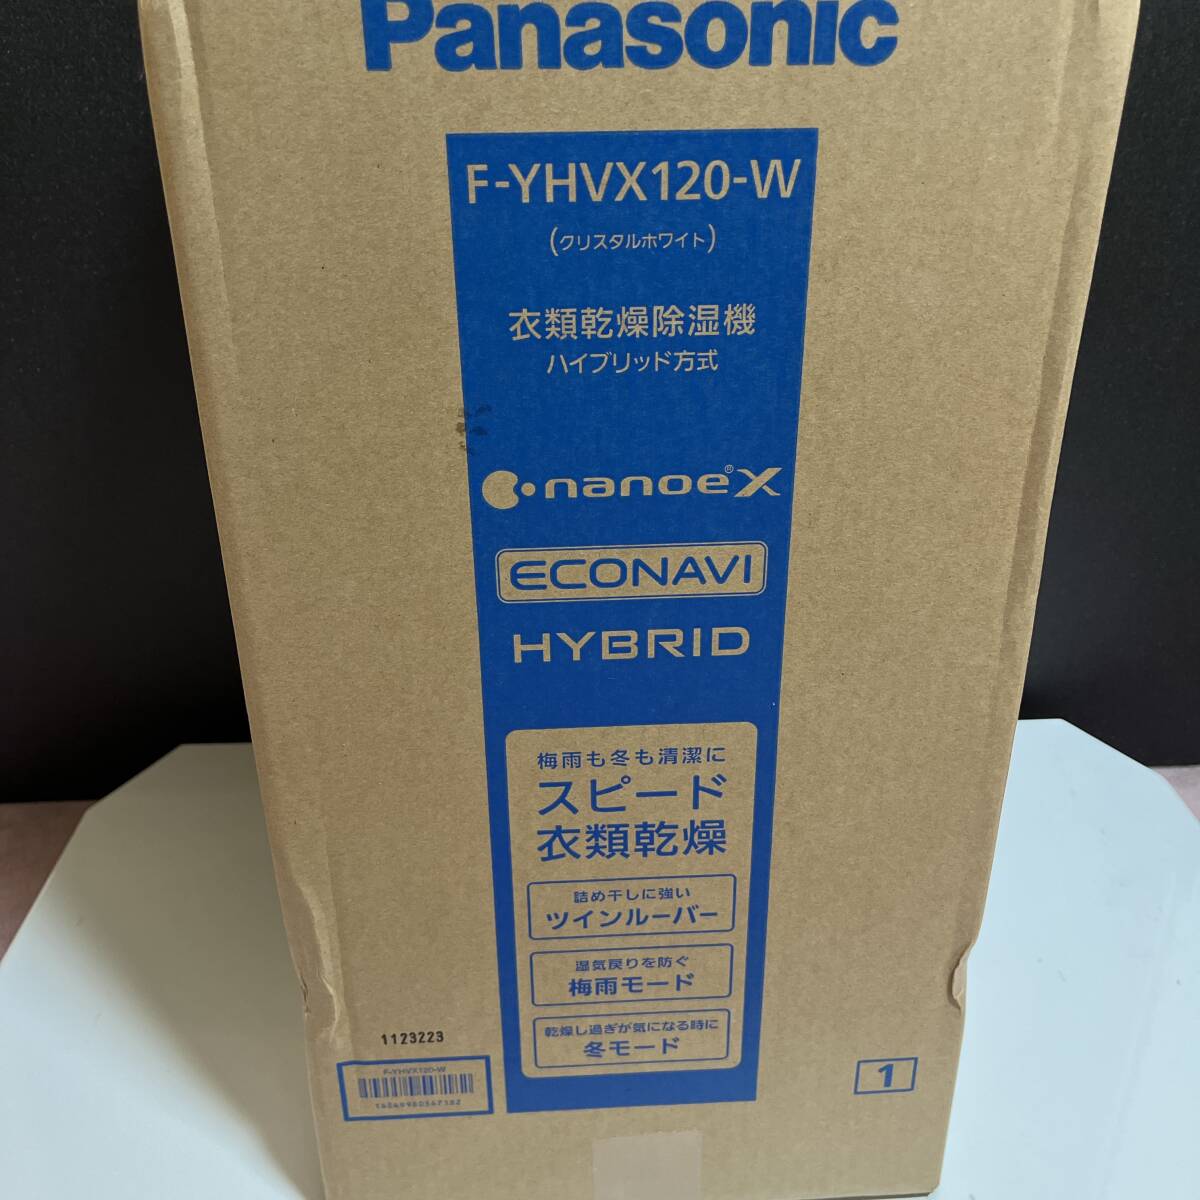  Panasonic F-YHVX120-W одежда сухой осушитель Ricoh ru товар-заменитель нераспечатанный 